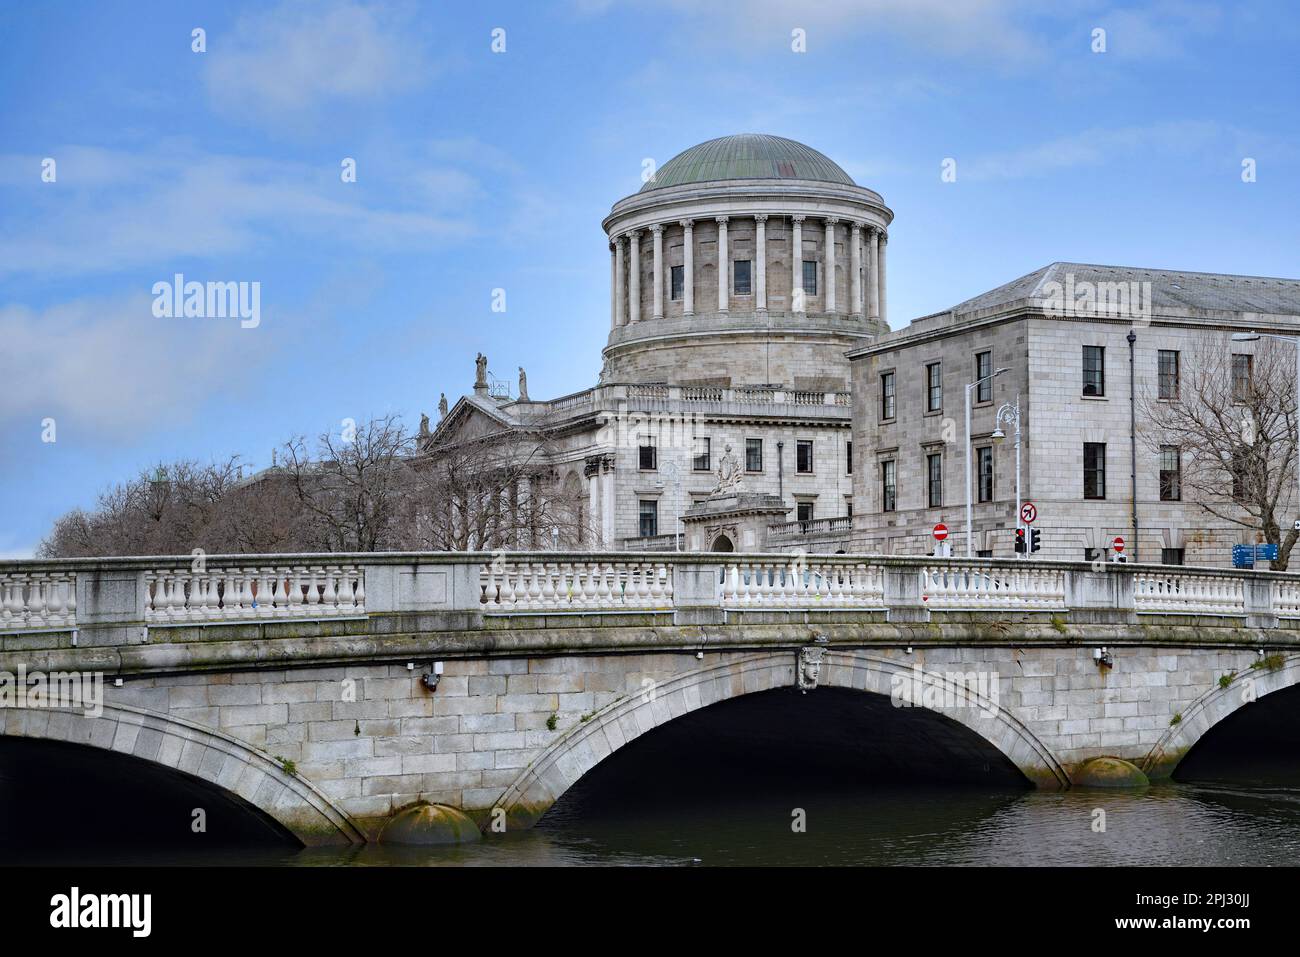 Questo imponente edificio a cupola accanto al fiume Liffey è noto come quattro tribunali, che ospitano, tra gli altri, la Corte Suprema d'Irlanda Foto Stock